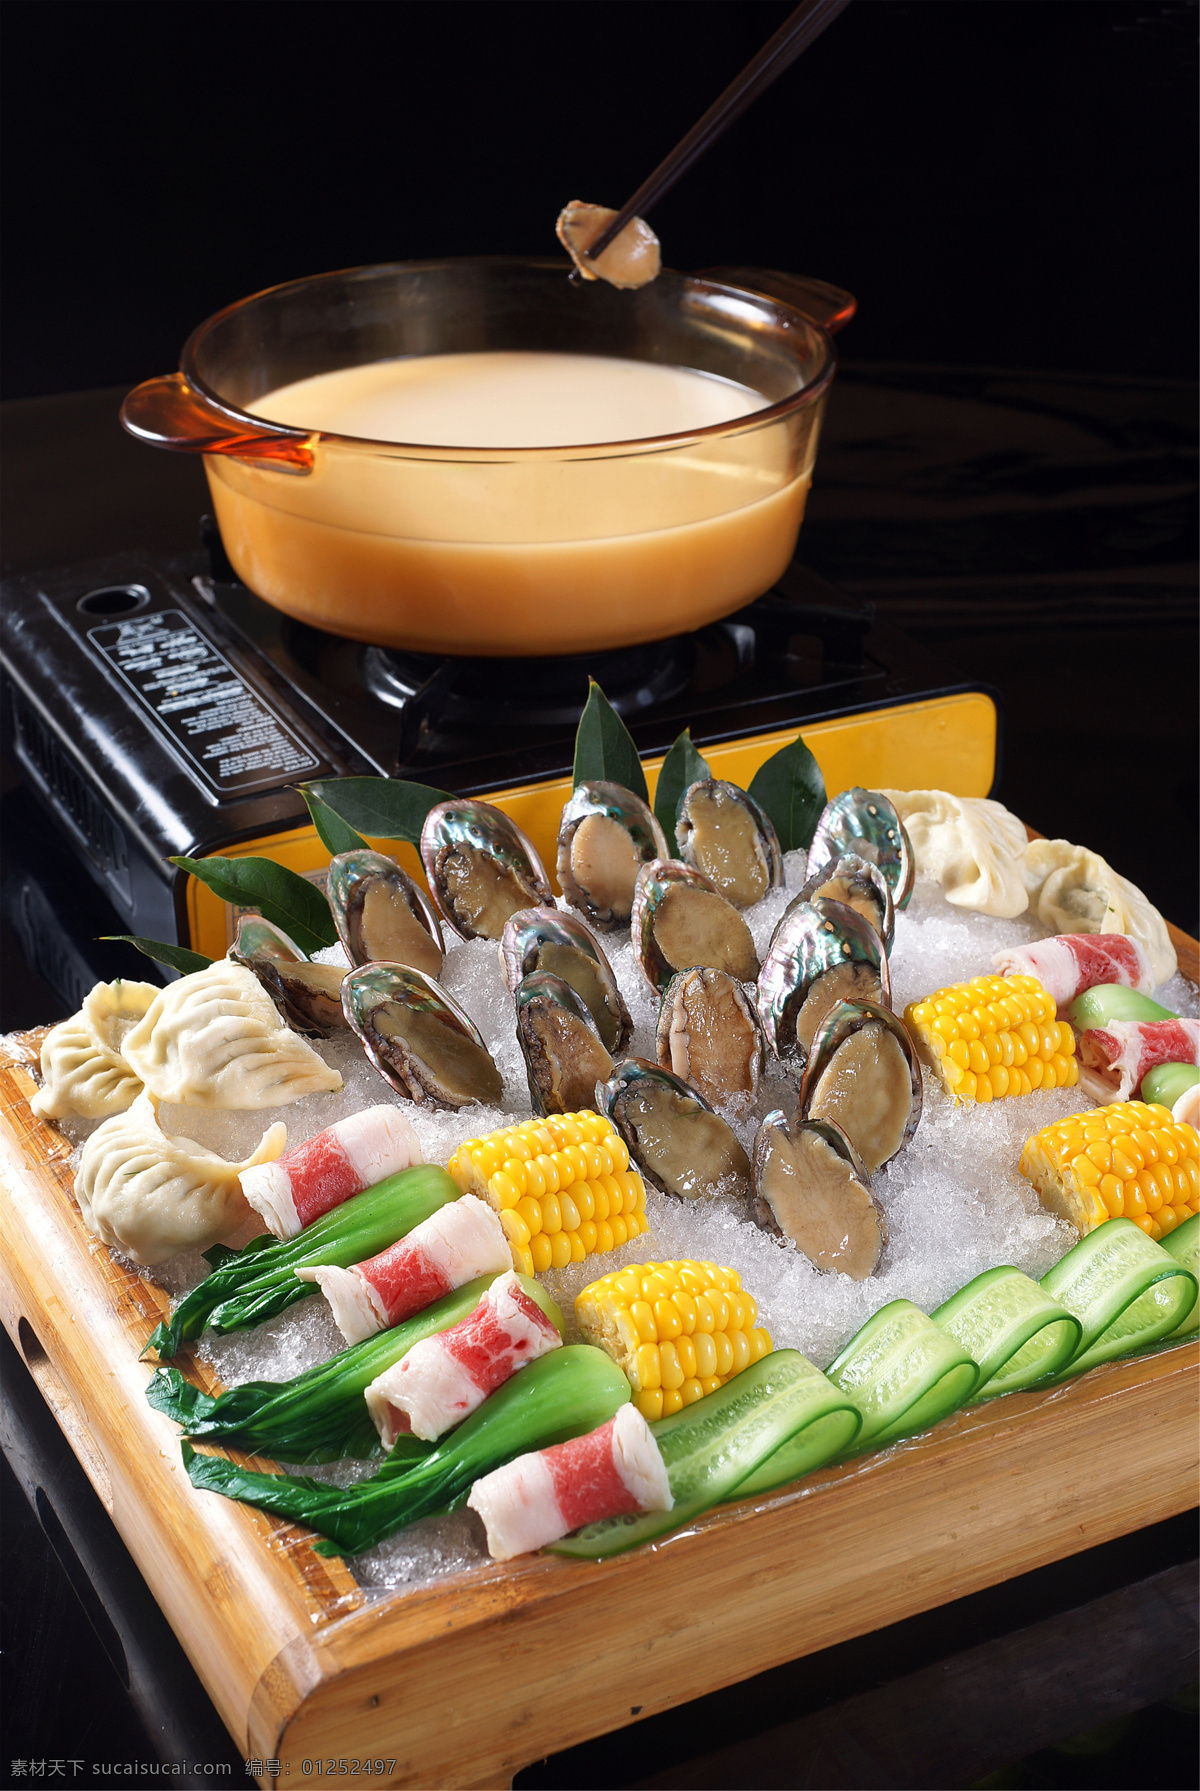 鲍鱼汤锅 美食 传统美食 餐饮美食 高清菜谱用图